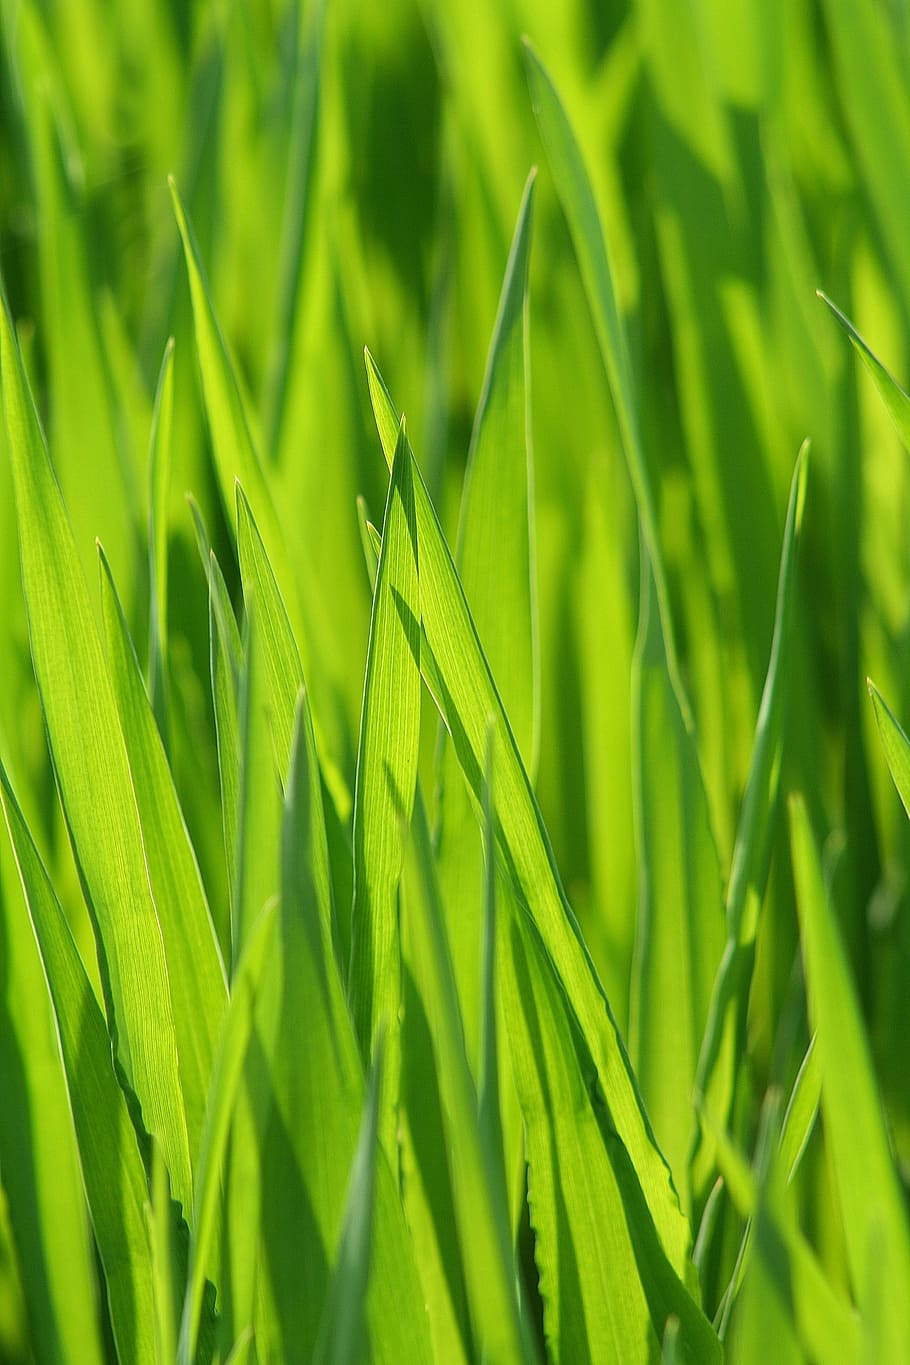 selektif, fotografi fokus, hijau, rumput, padang rumput, bilah rumput, sereal, rumput hijau, alam, dekat